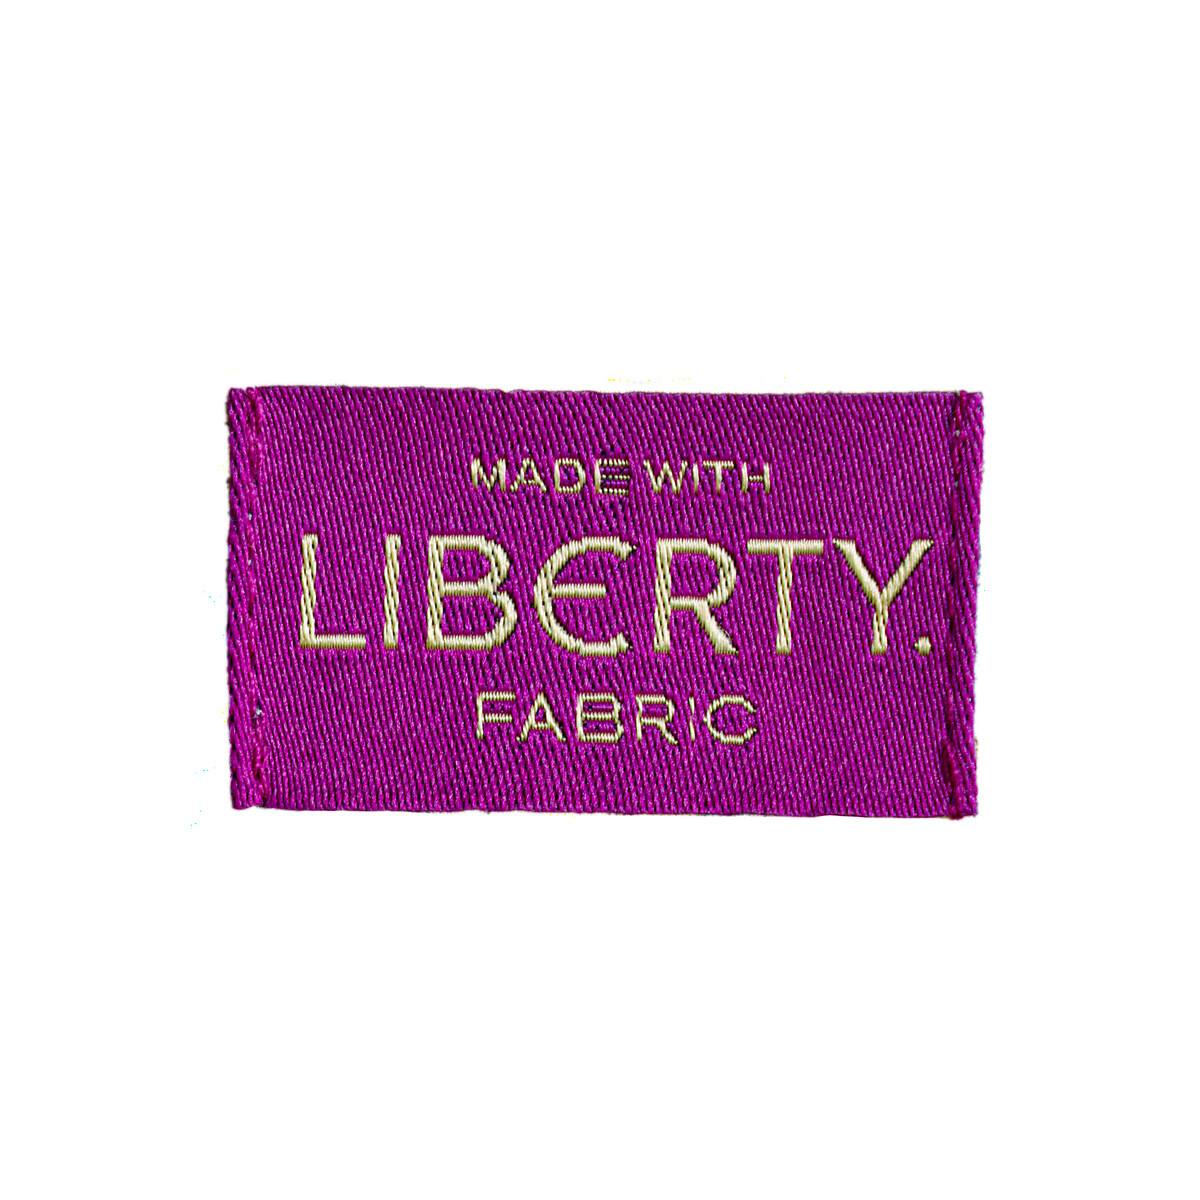 Шорты С принтом Liberty Fabrics 36 (FR) - 42 (RUS) другие LaRedoute, размер 36 (FR) - 42 (RUS) Шорты С принтом Liberty Fabrics 36 (FR) - 42 (RUS) другие - фото 5